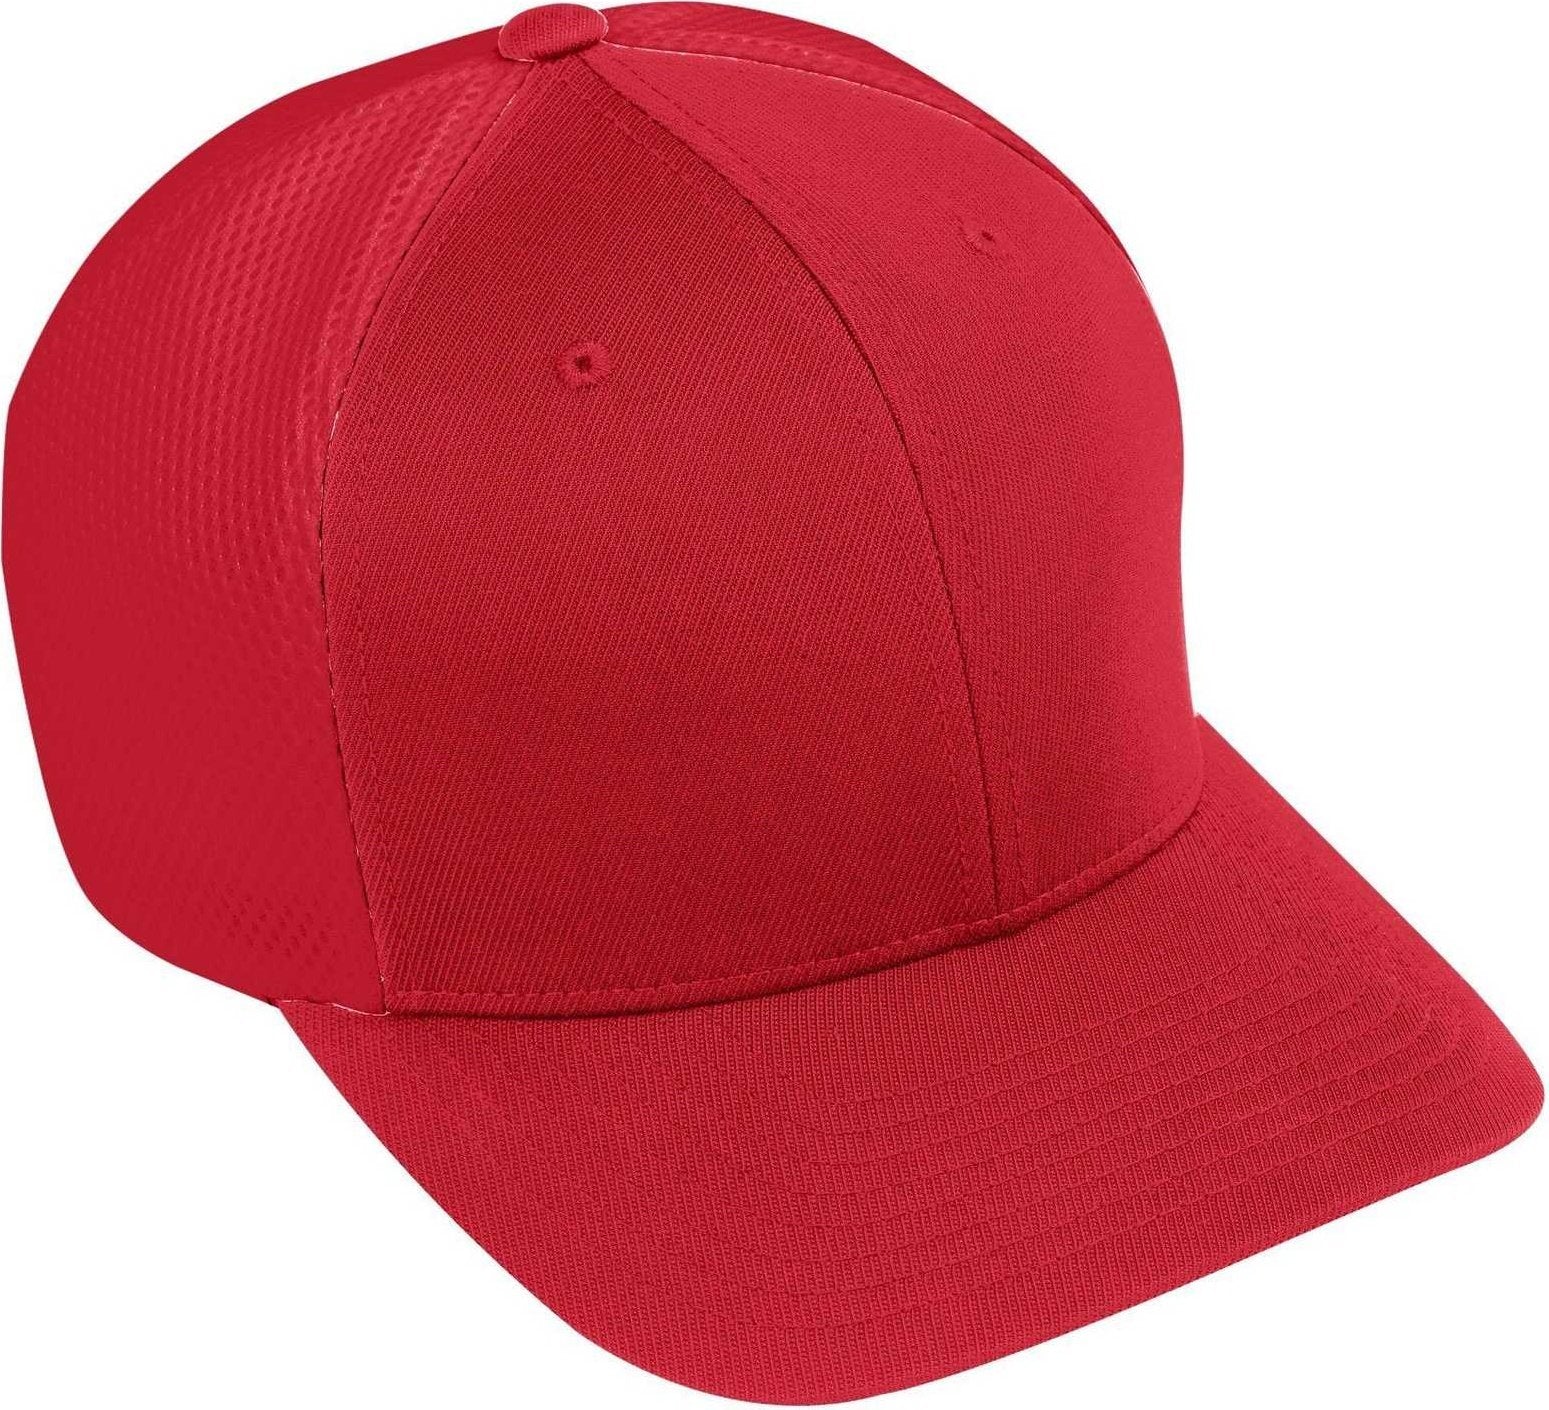 Augusta 6300 Flexfit Vapor Cap - Red - HIT a Double